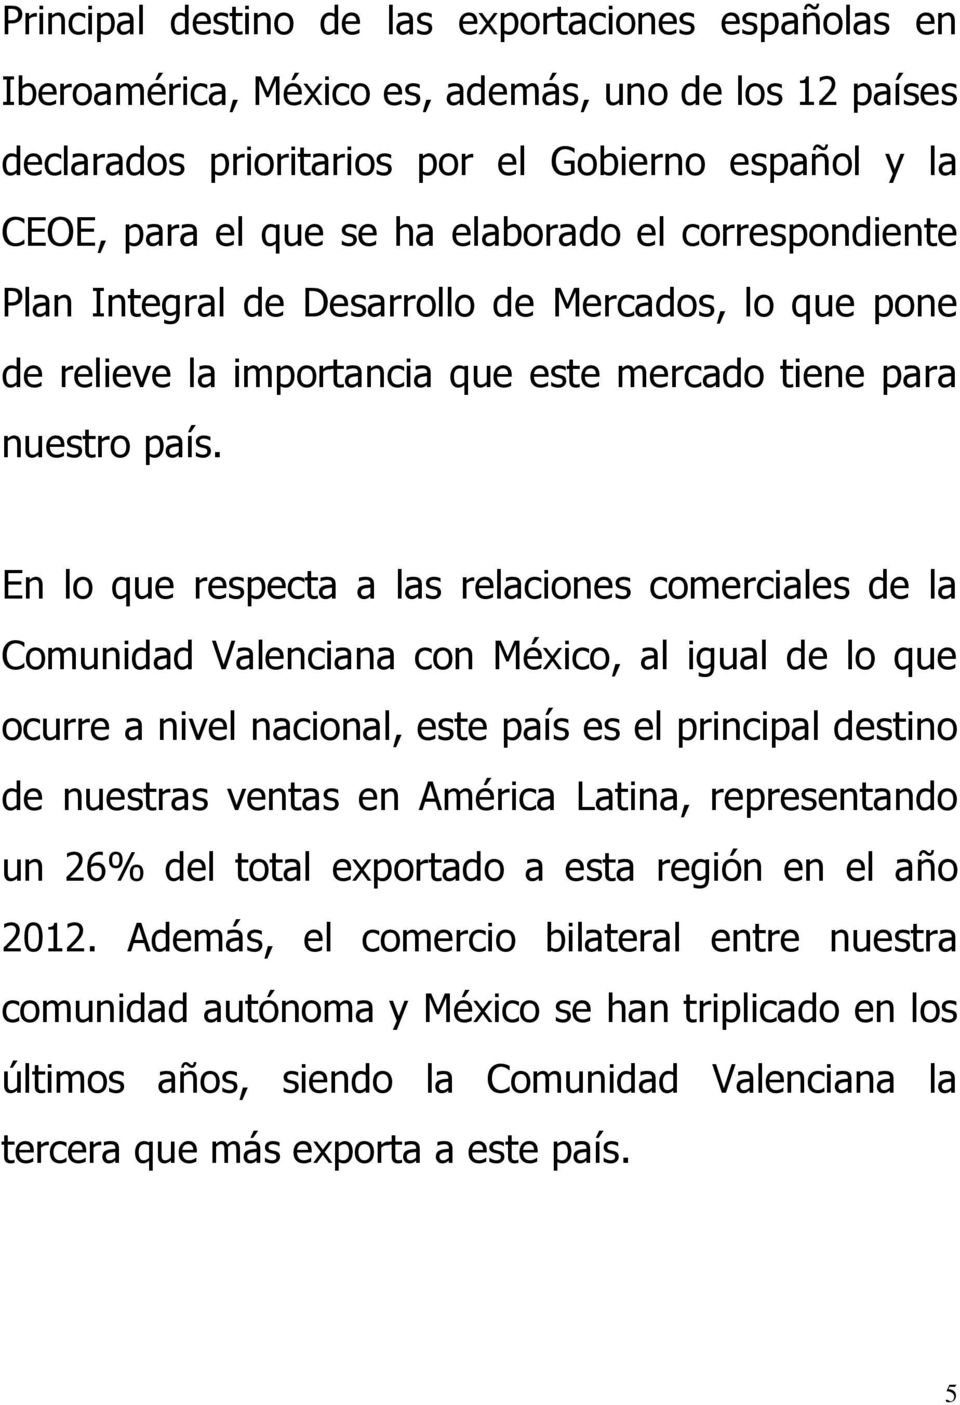 En lo que respecta a las relaciones comerciales de la Comunidad Valenciana con México, al igual de lo que ocurre a nivel nacional, este país es el principal destino de nuestras ventas en América